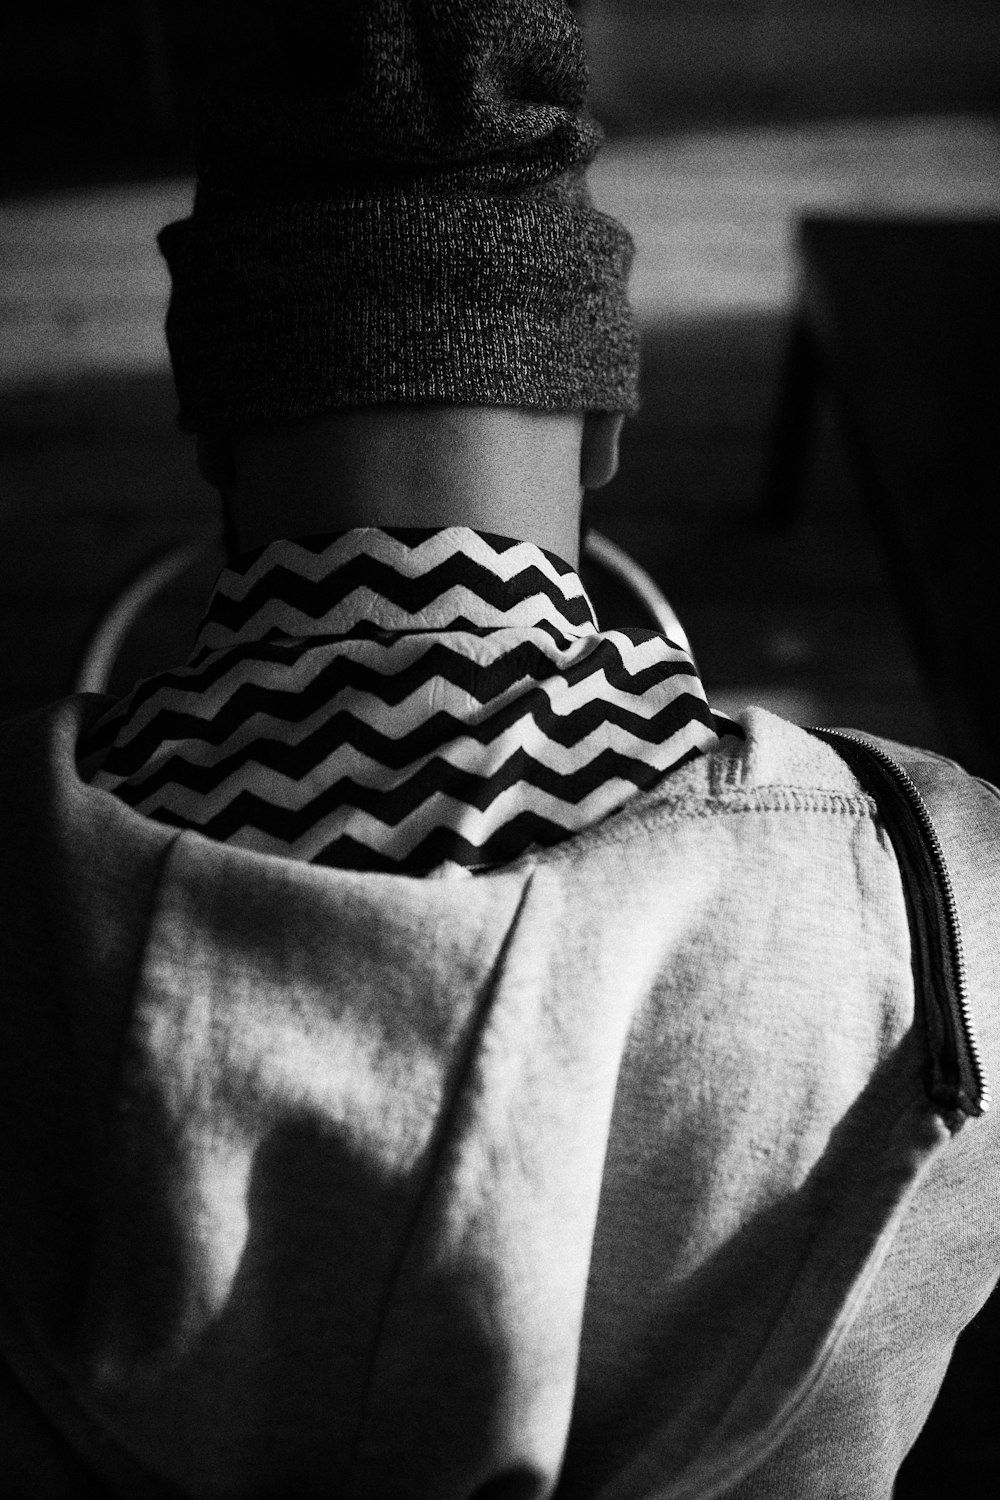 fotografia in scala di grigi di un uomo che indossa un berretto lavorato a maglia